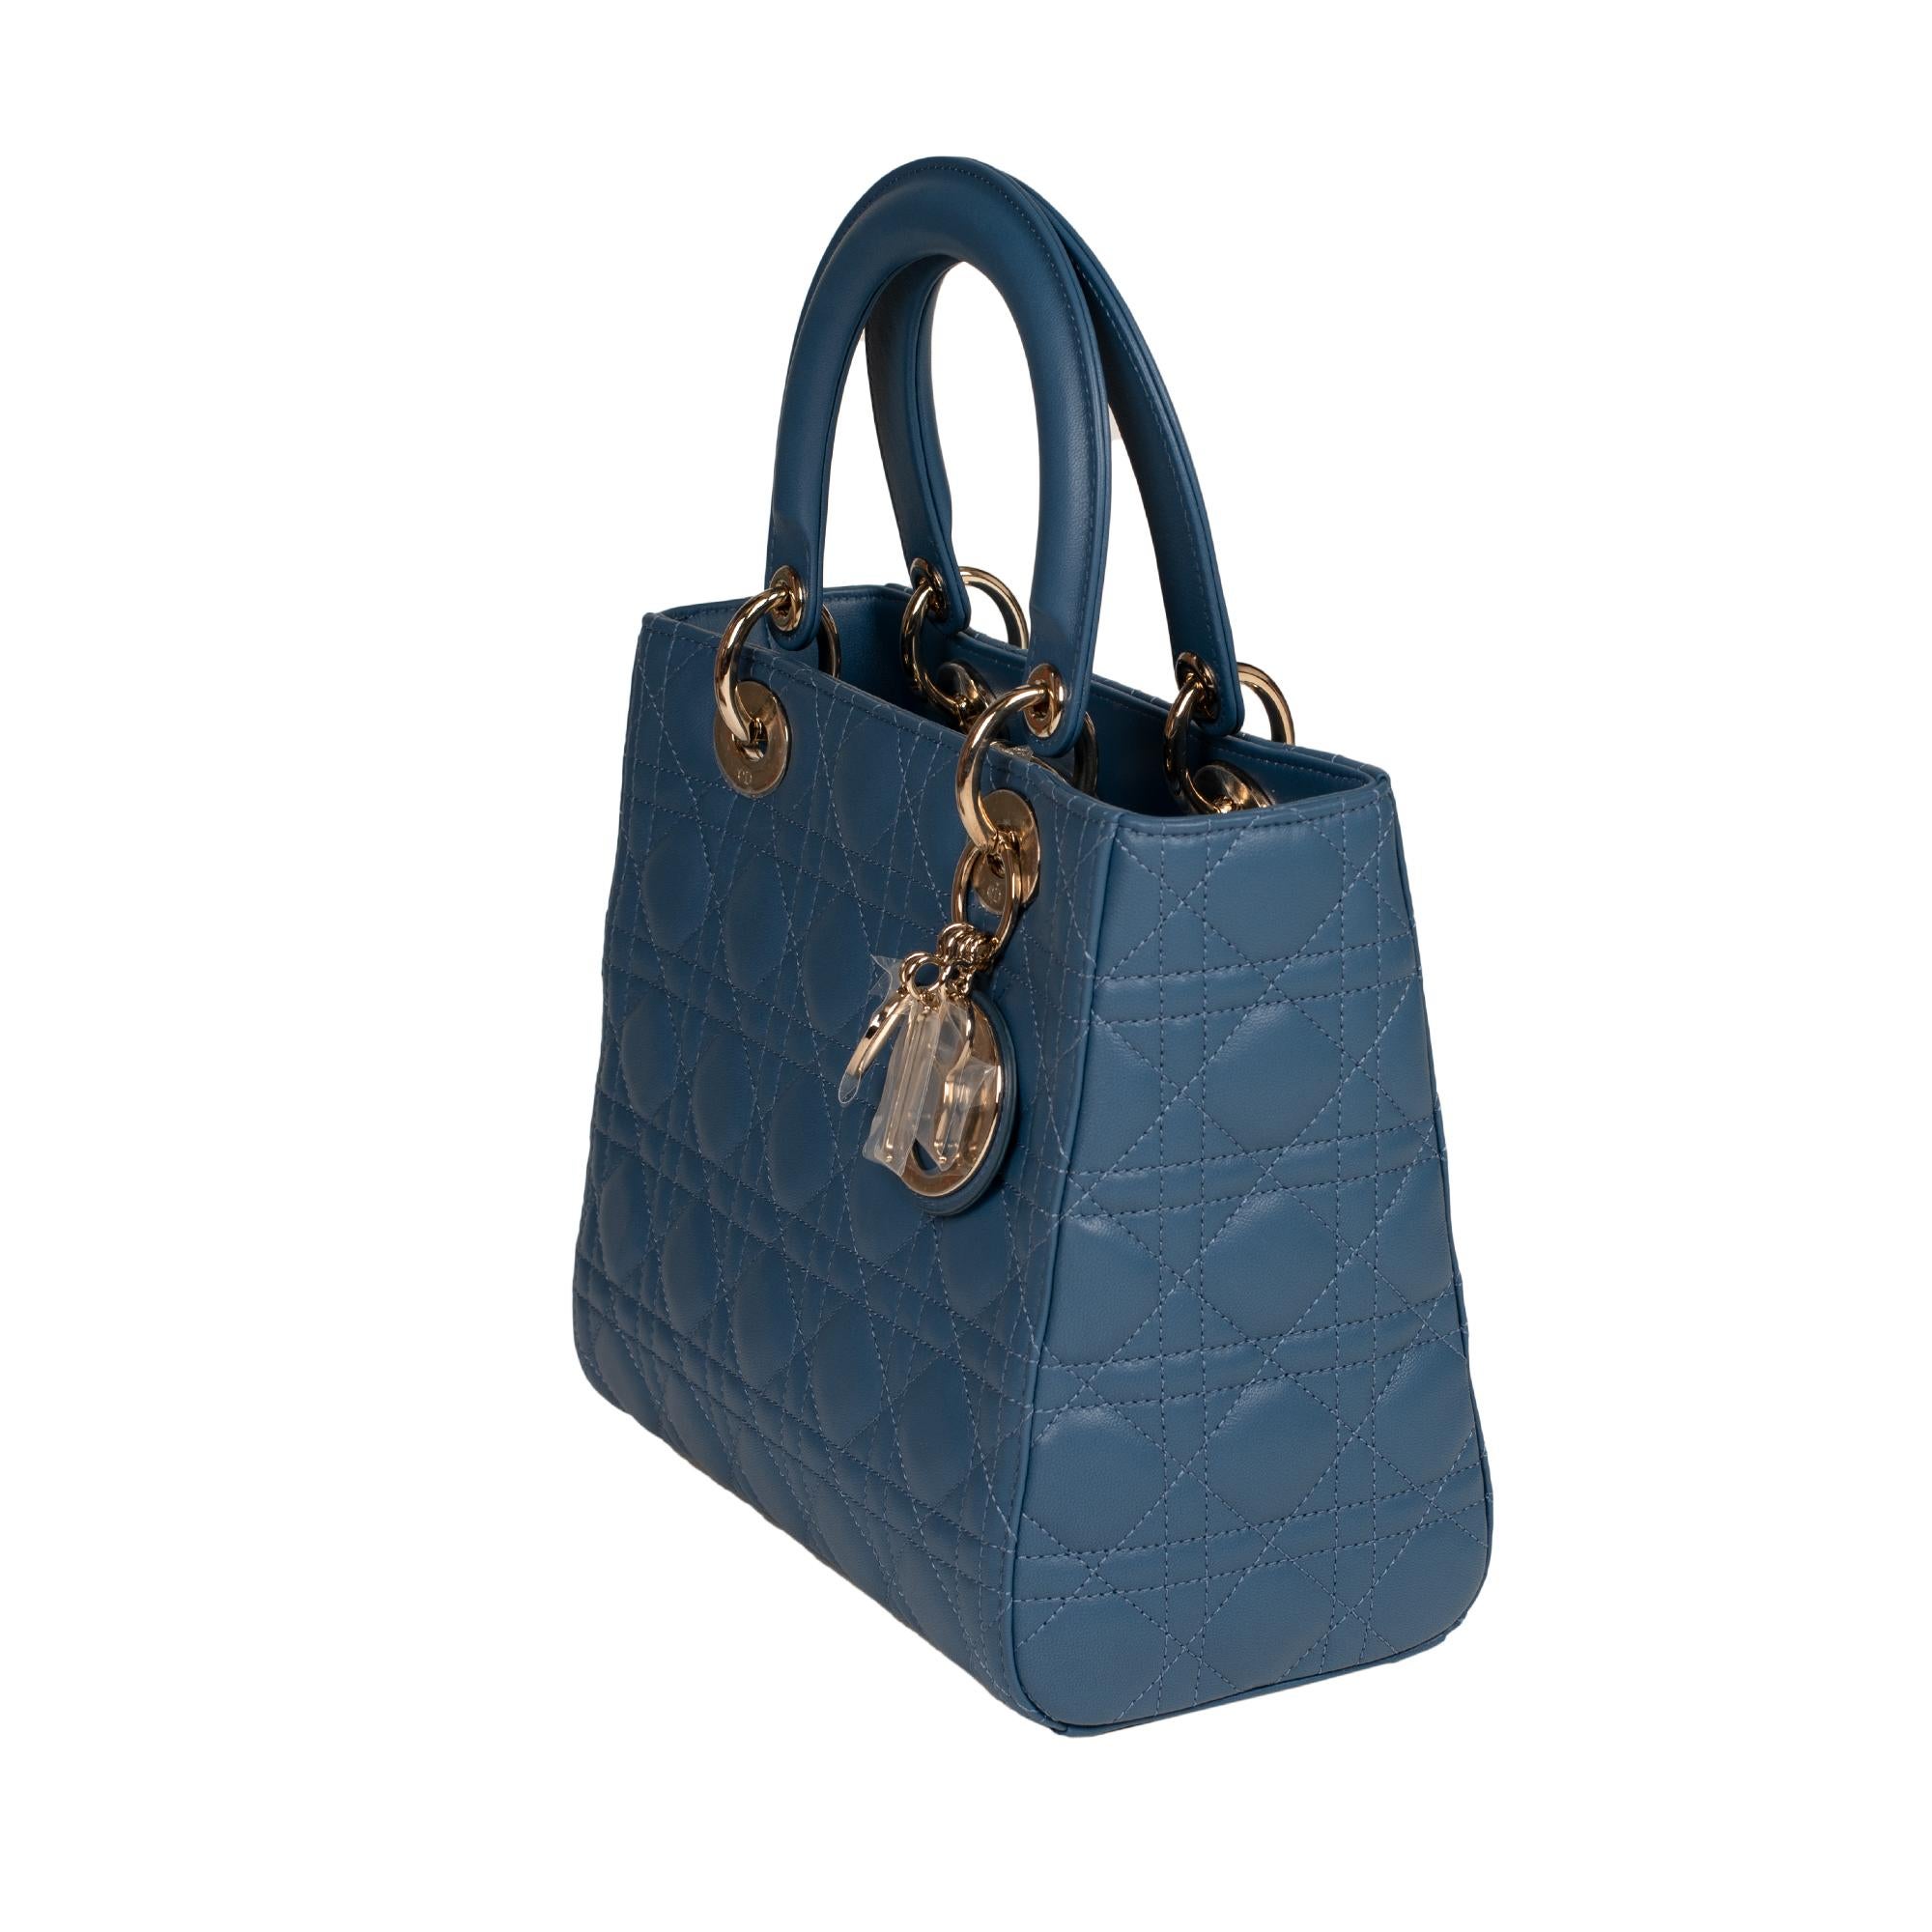 Blue  Christian Dior Lady Dior MM (Medium size) handbag in blue cannage leather, PHW